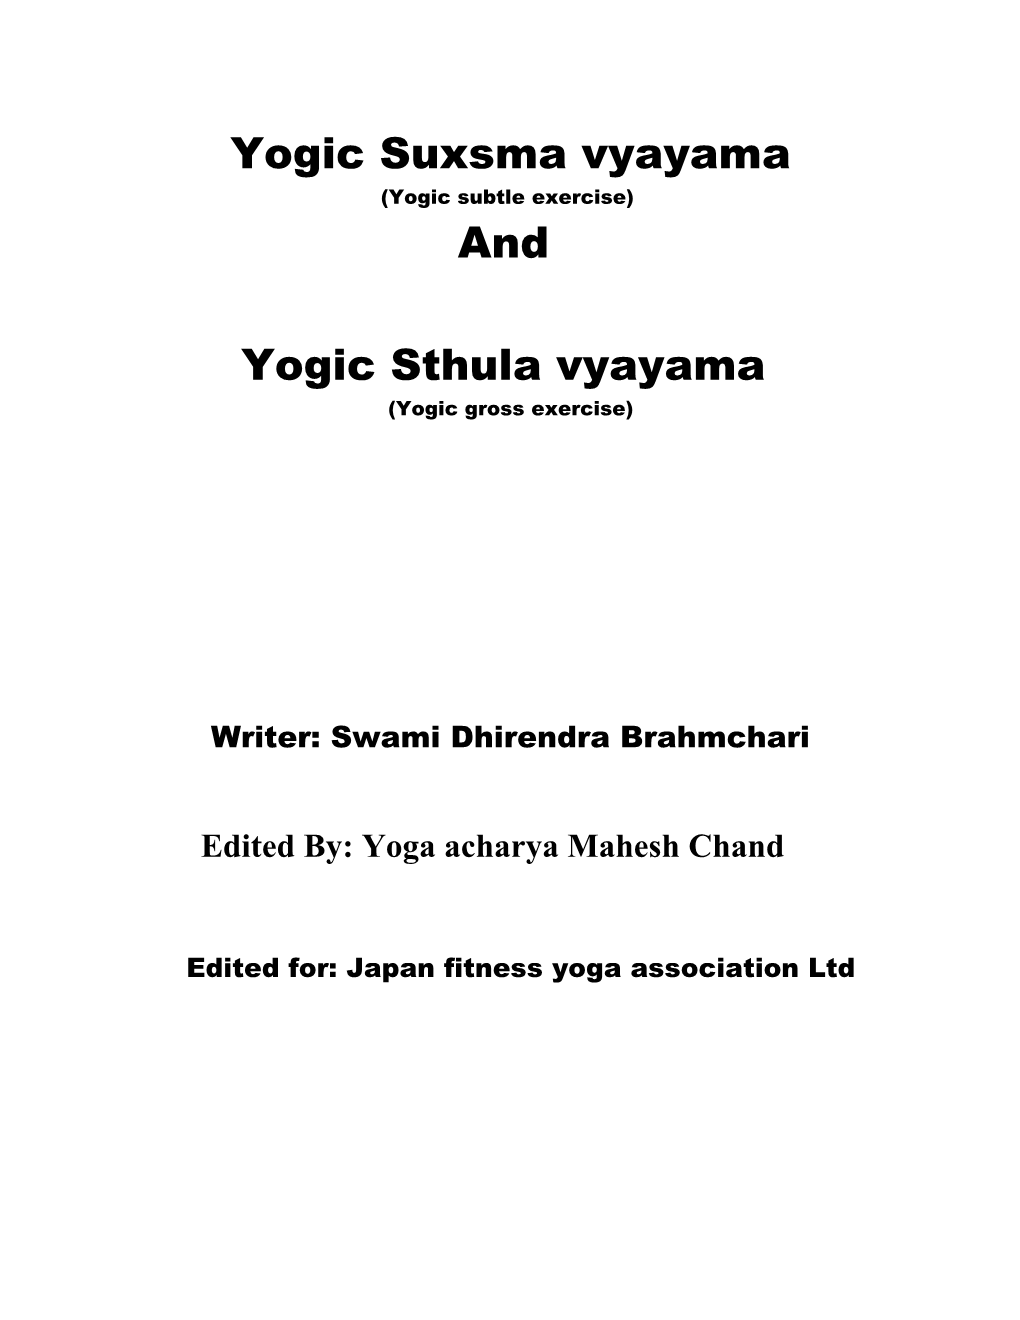 Yogic Suxsma Vyayama